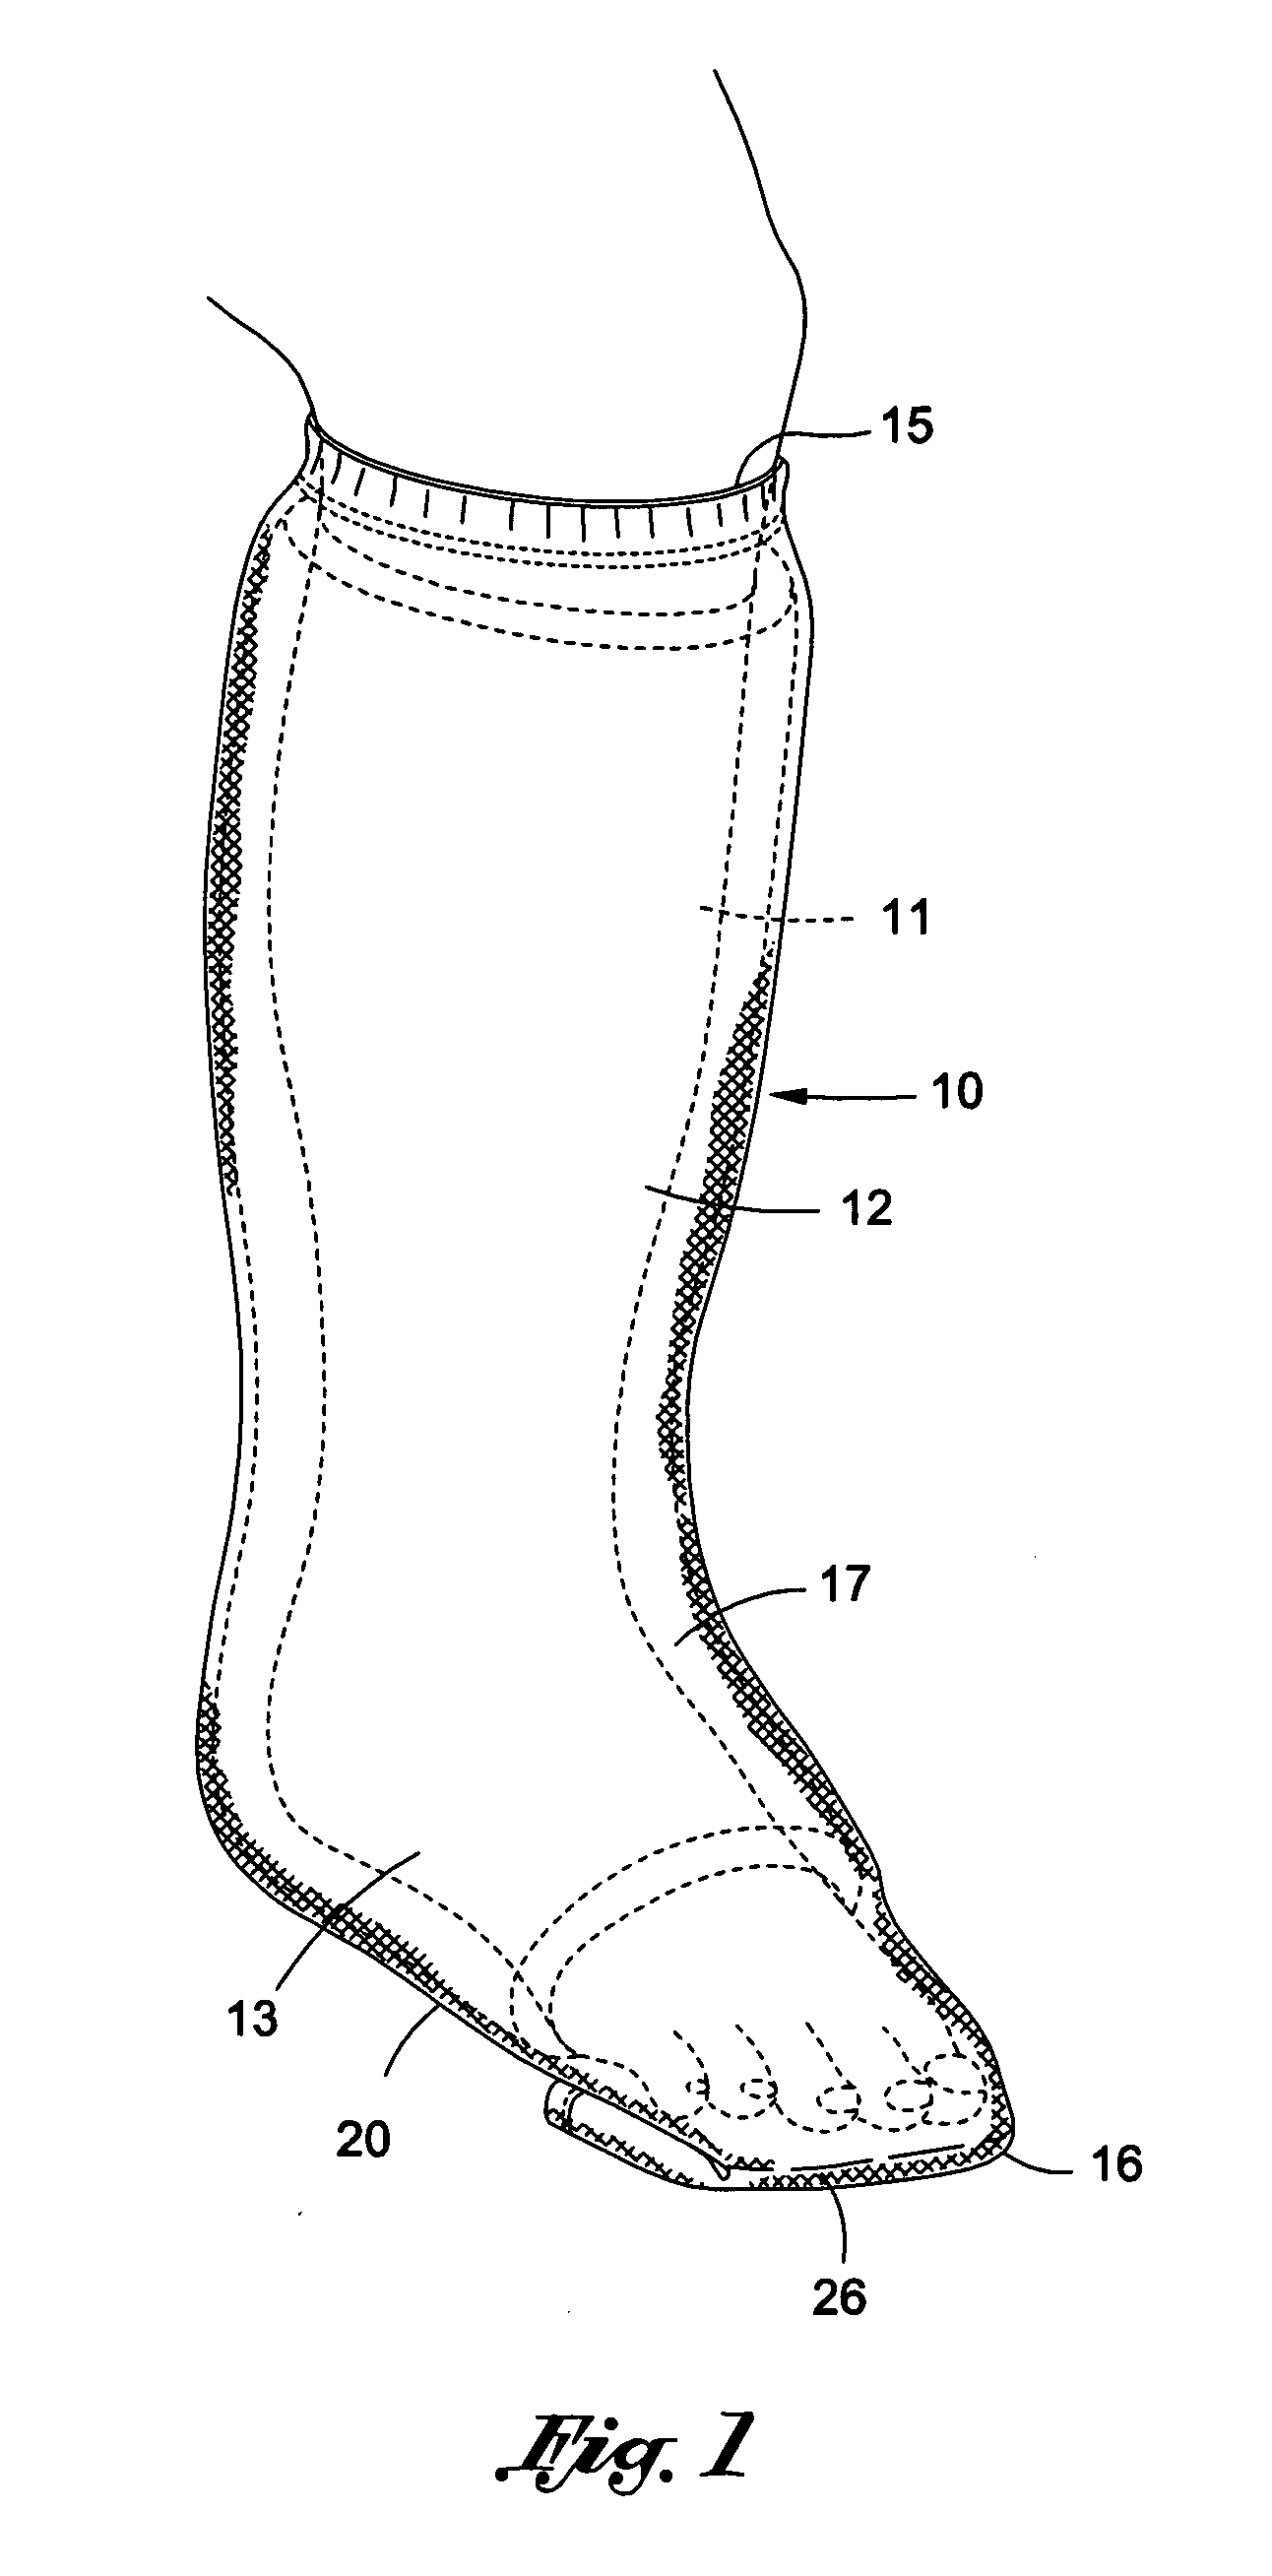 Leg cast covering apparatus